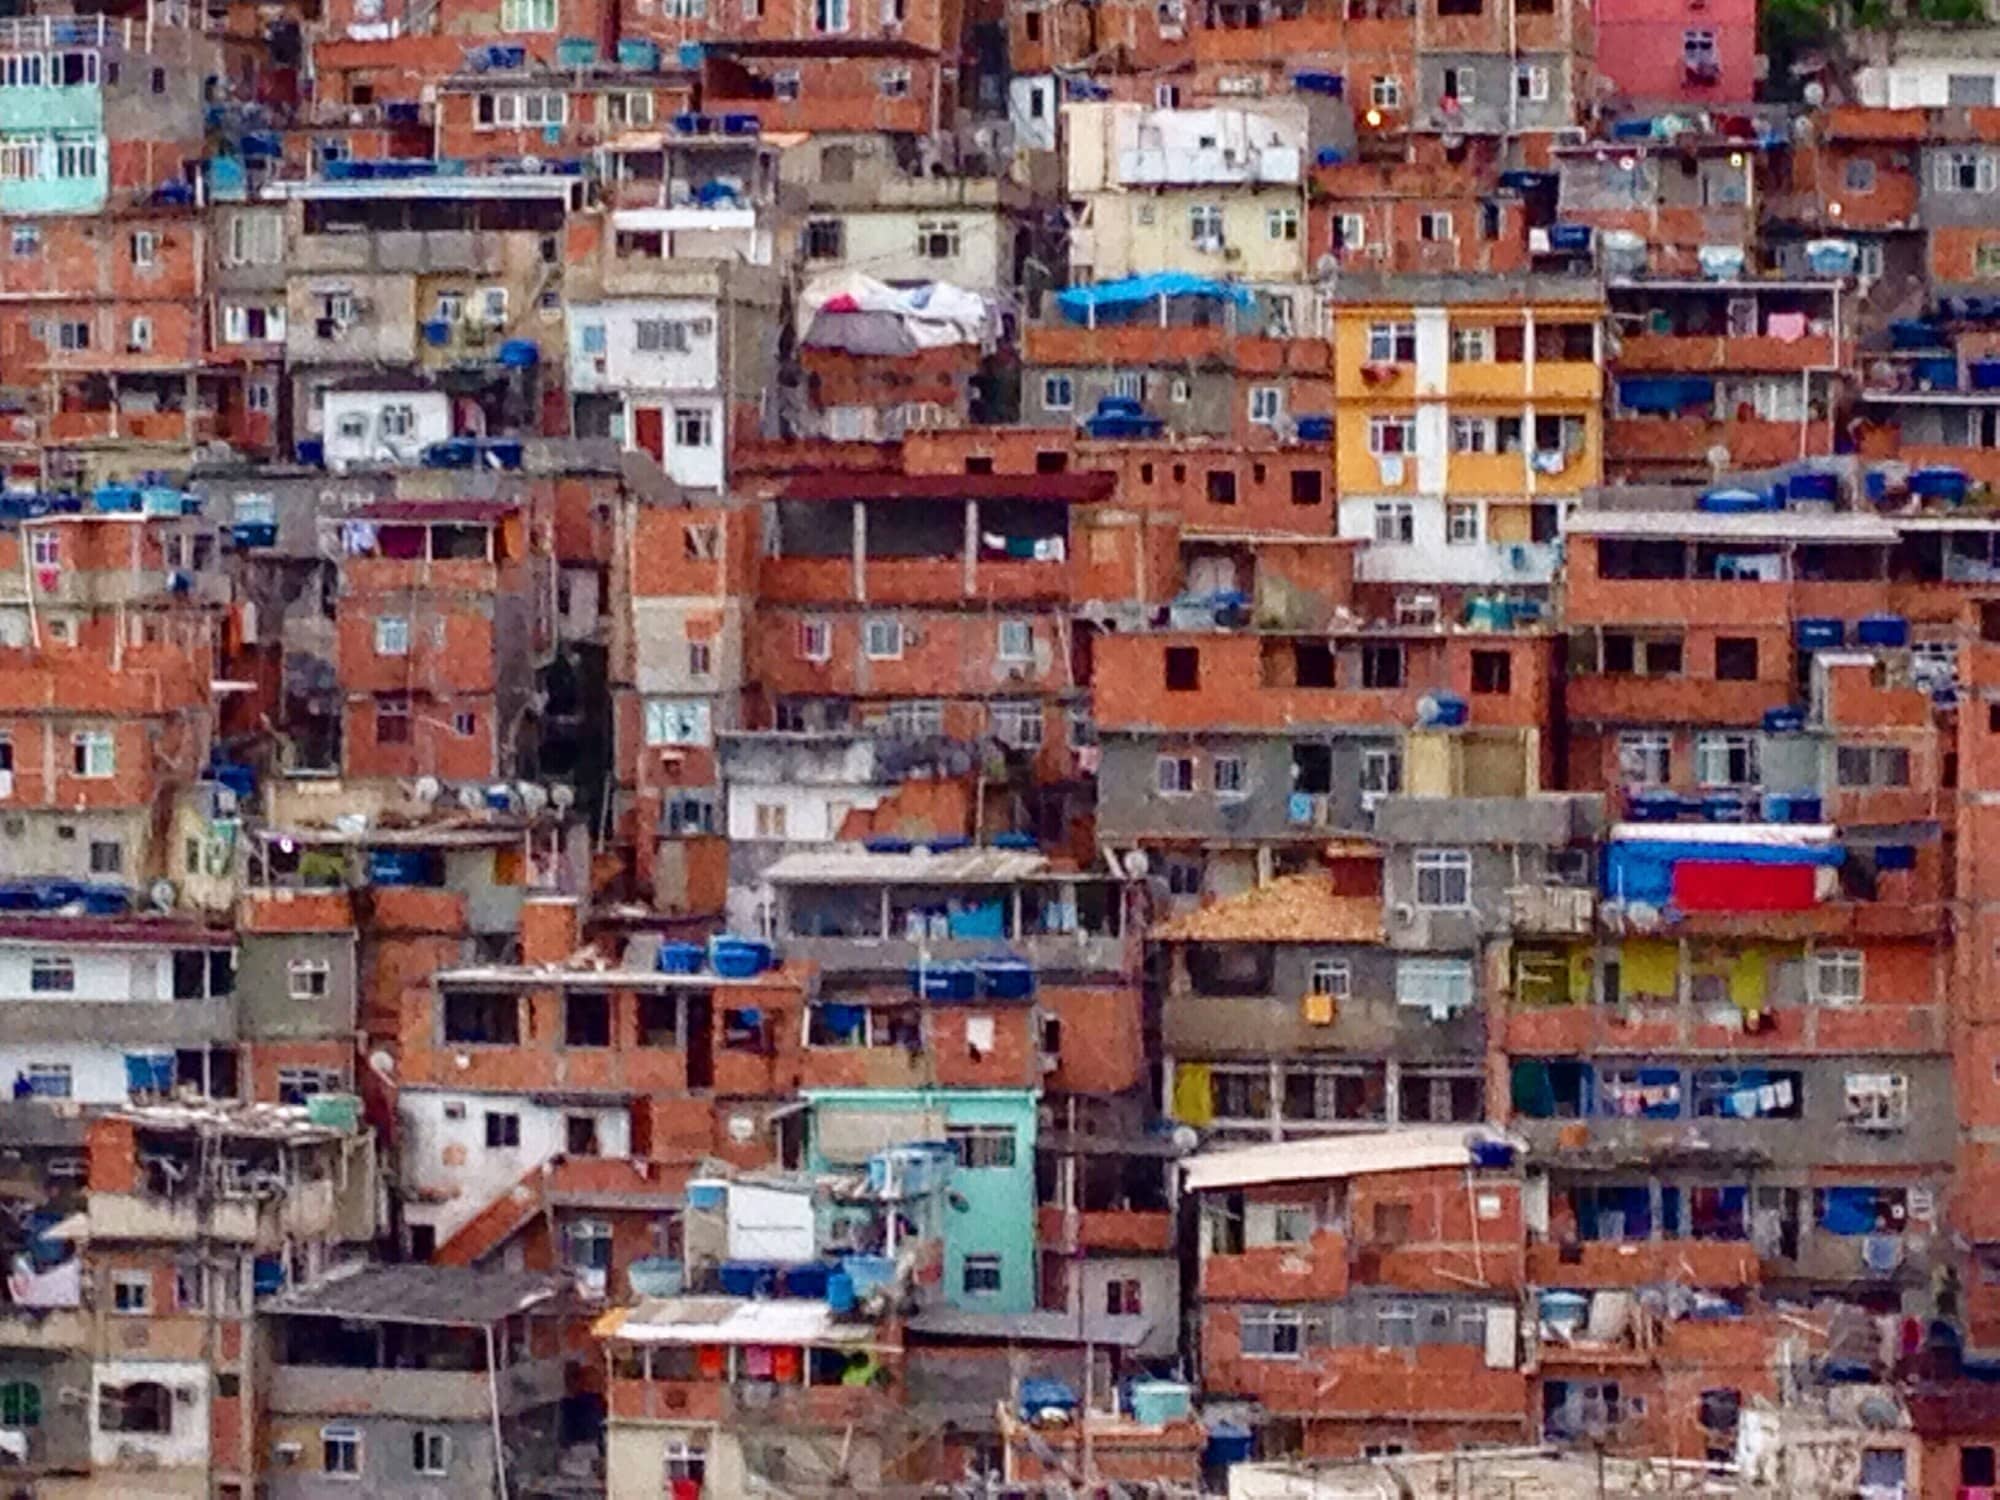 Comment organiser une visite authentique des favelas à Rio de Janeiro, Brésil : sécurité et recommandations ?